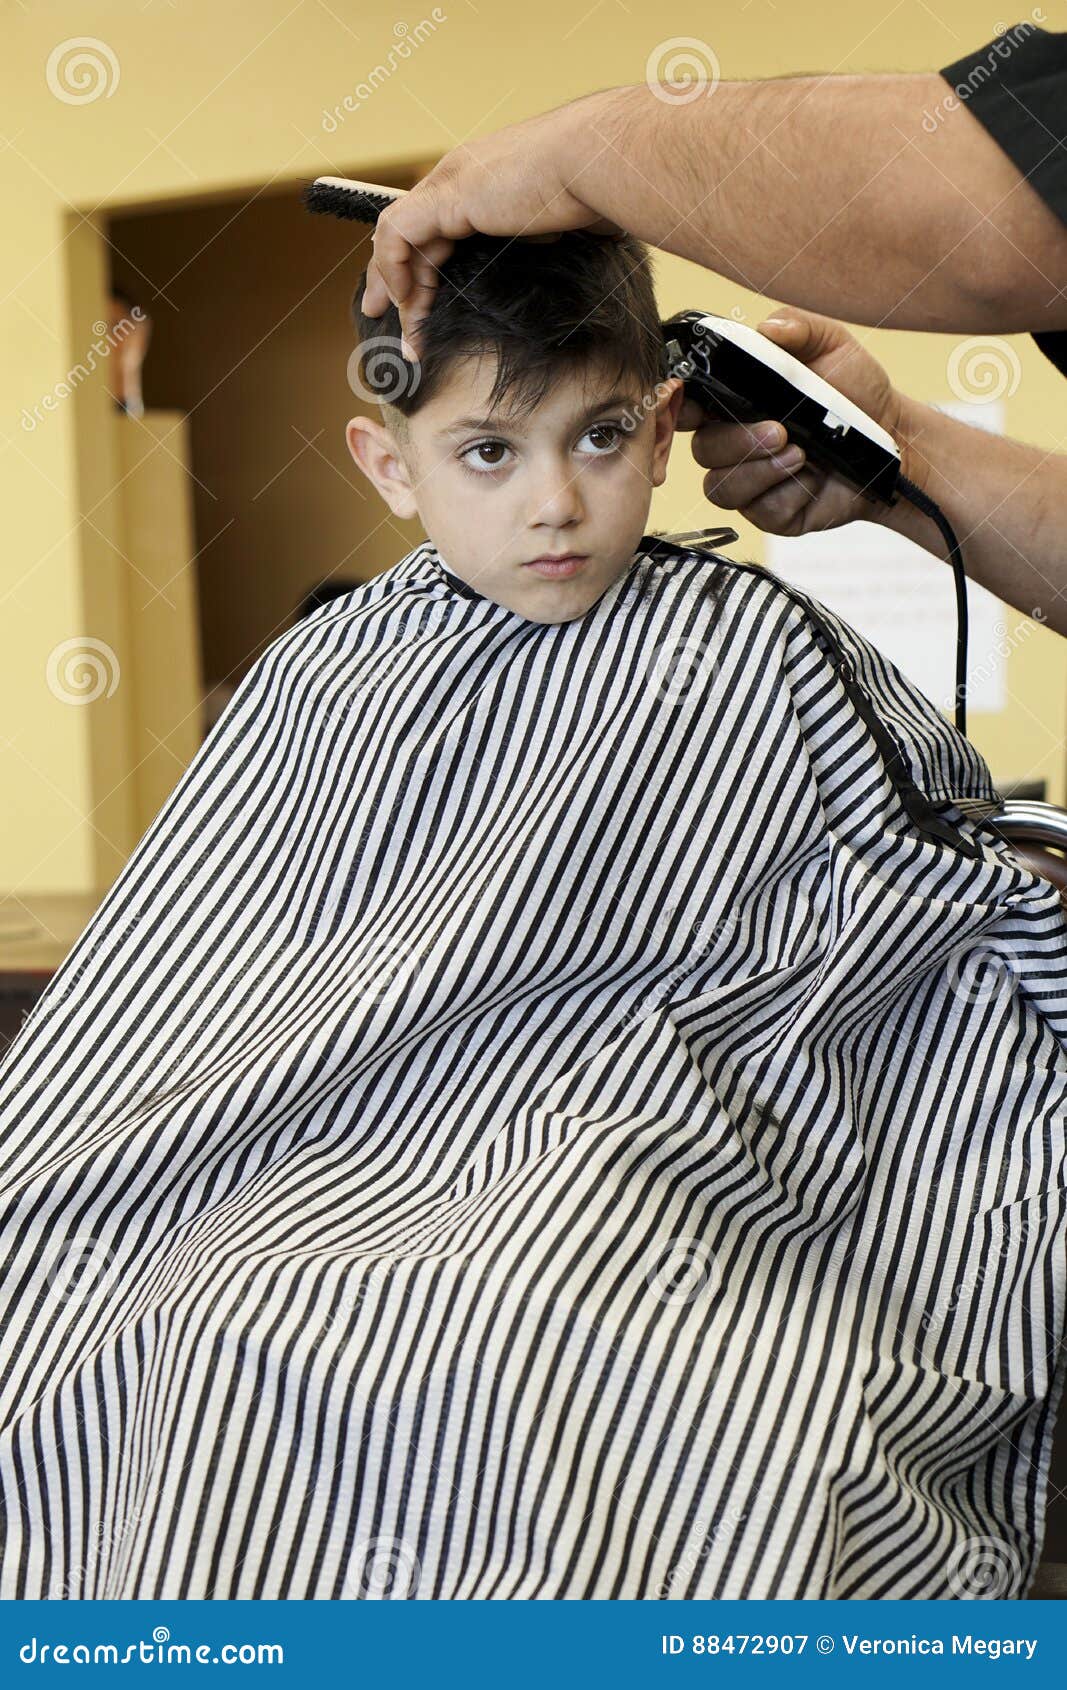 Little Boy Getting A Haircut At The Barber Shop Cartoon 